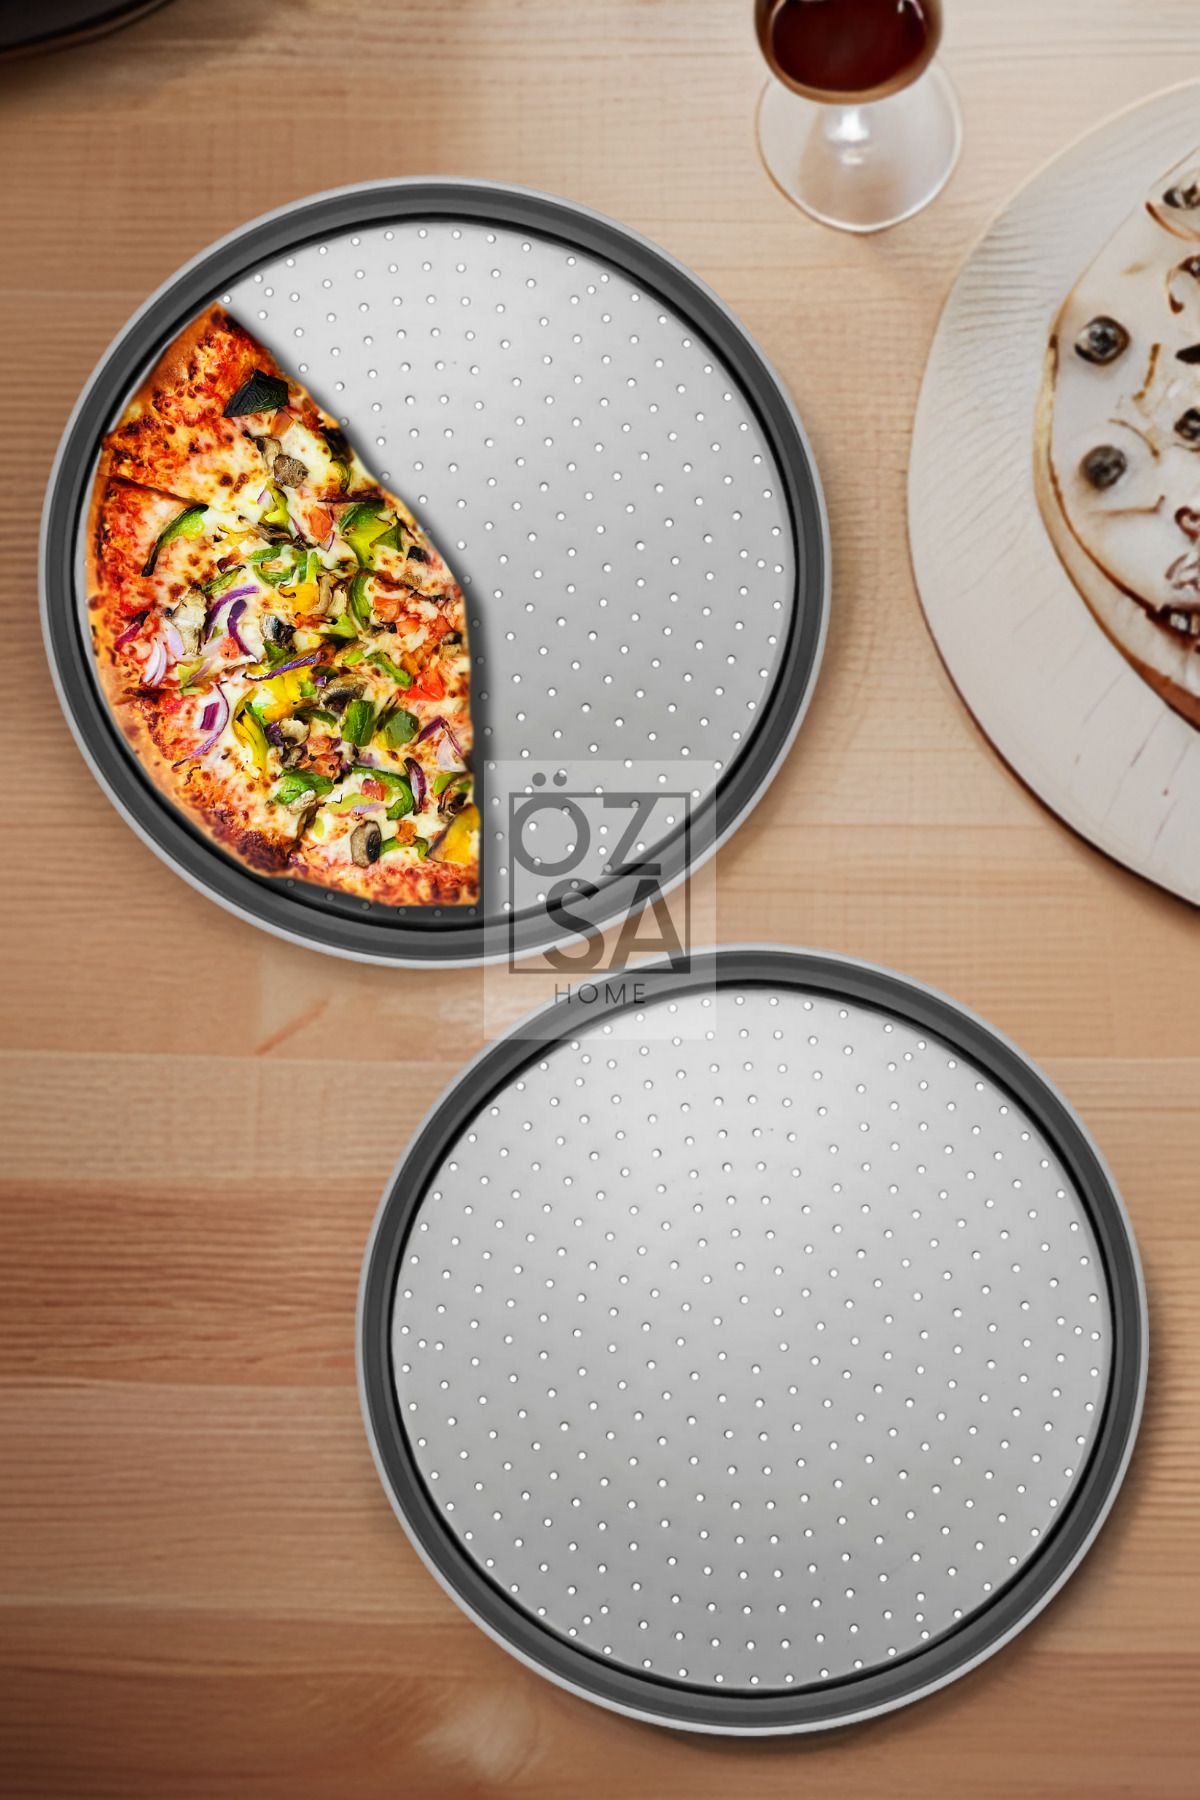 ÖzSa Home 2 Adet 36cm Delikli Pizza Tepsisi Lahmacun Pide Tepsisi 36 Cm 2 Parça Çelik Pizza Tepsisi